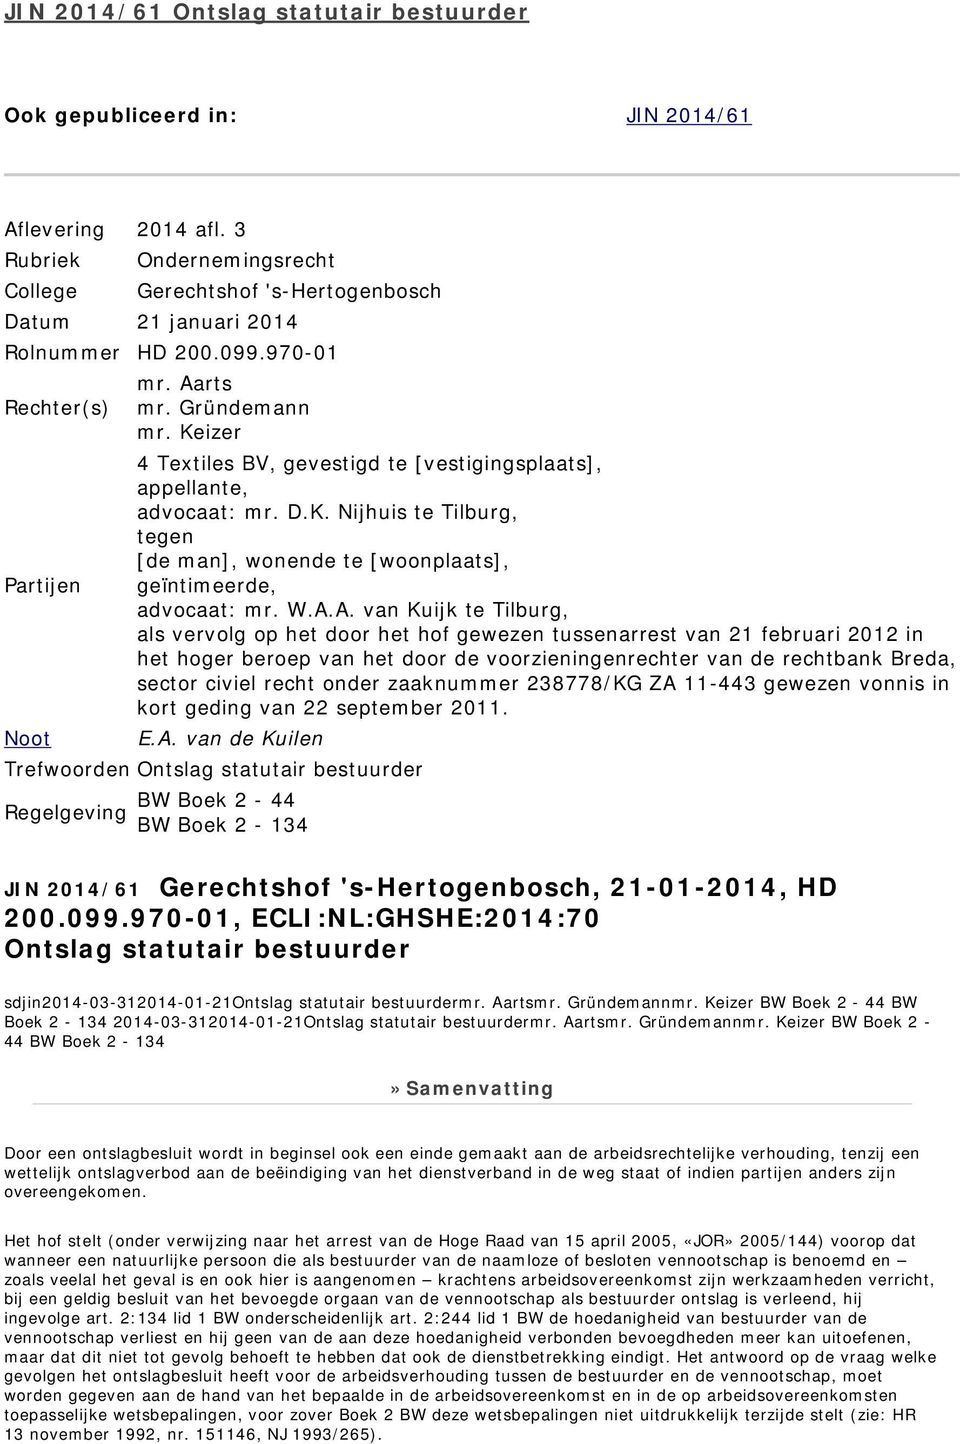 W.A.A. van Kuijk te Tilburg, als vervolg op het door het hof gewezen tussenarrest van 21 februari 2012 in het hoger beroep van het door de voorzieningenrechter van de rechtbank Breda, sector civiel